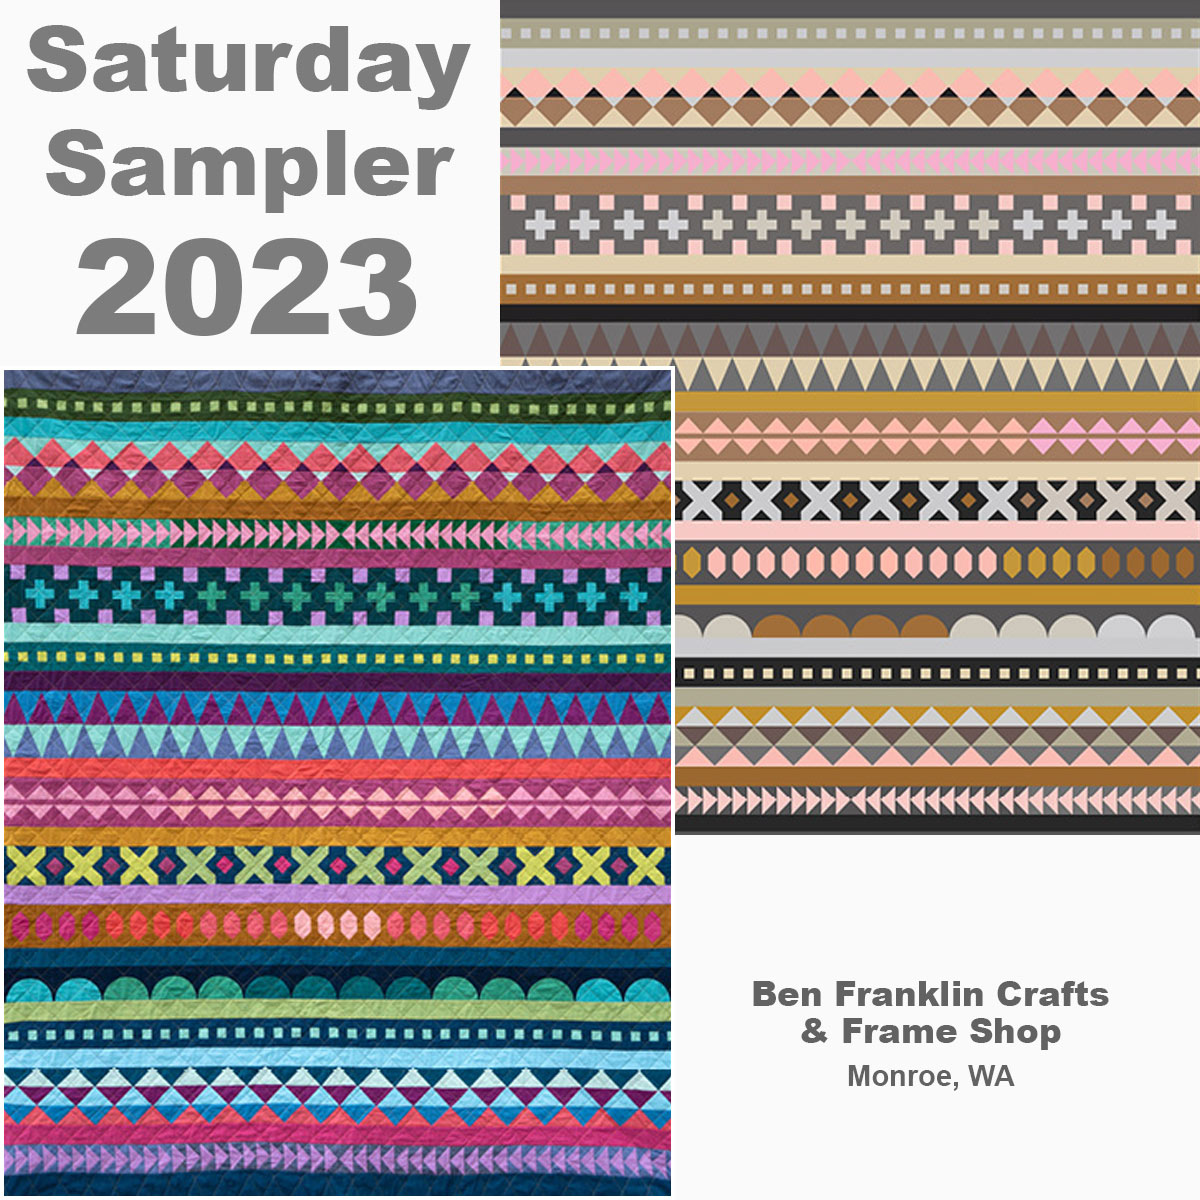 Saturday Sampler 2023